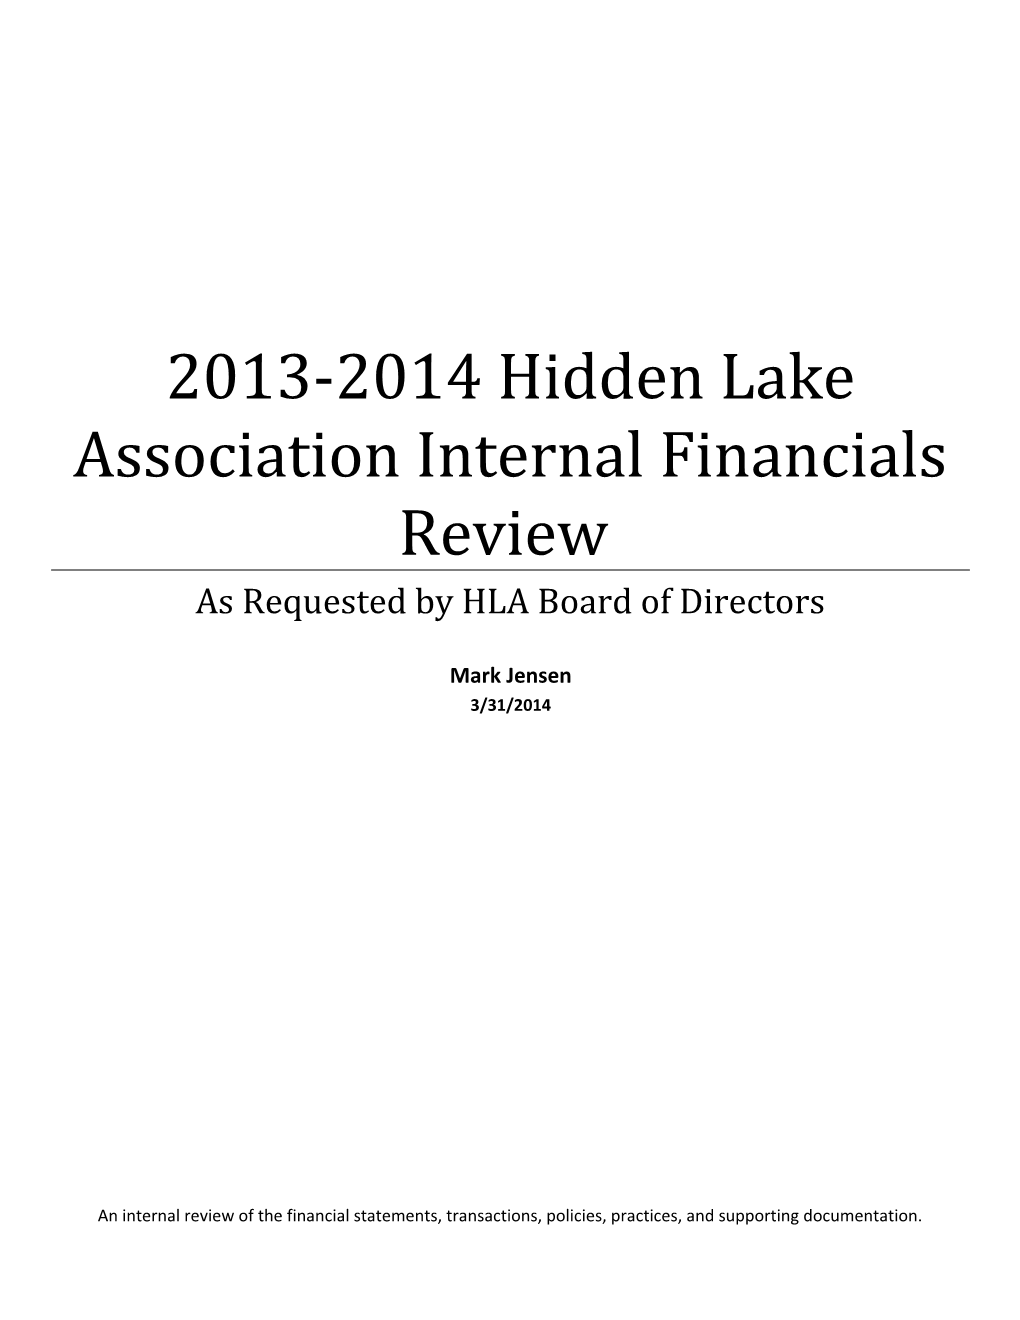 Hidden Lake Association Internal Financials Review